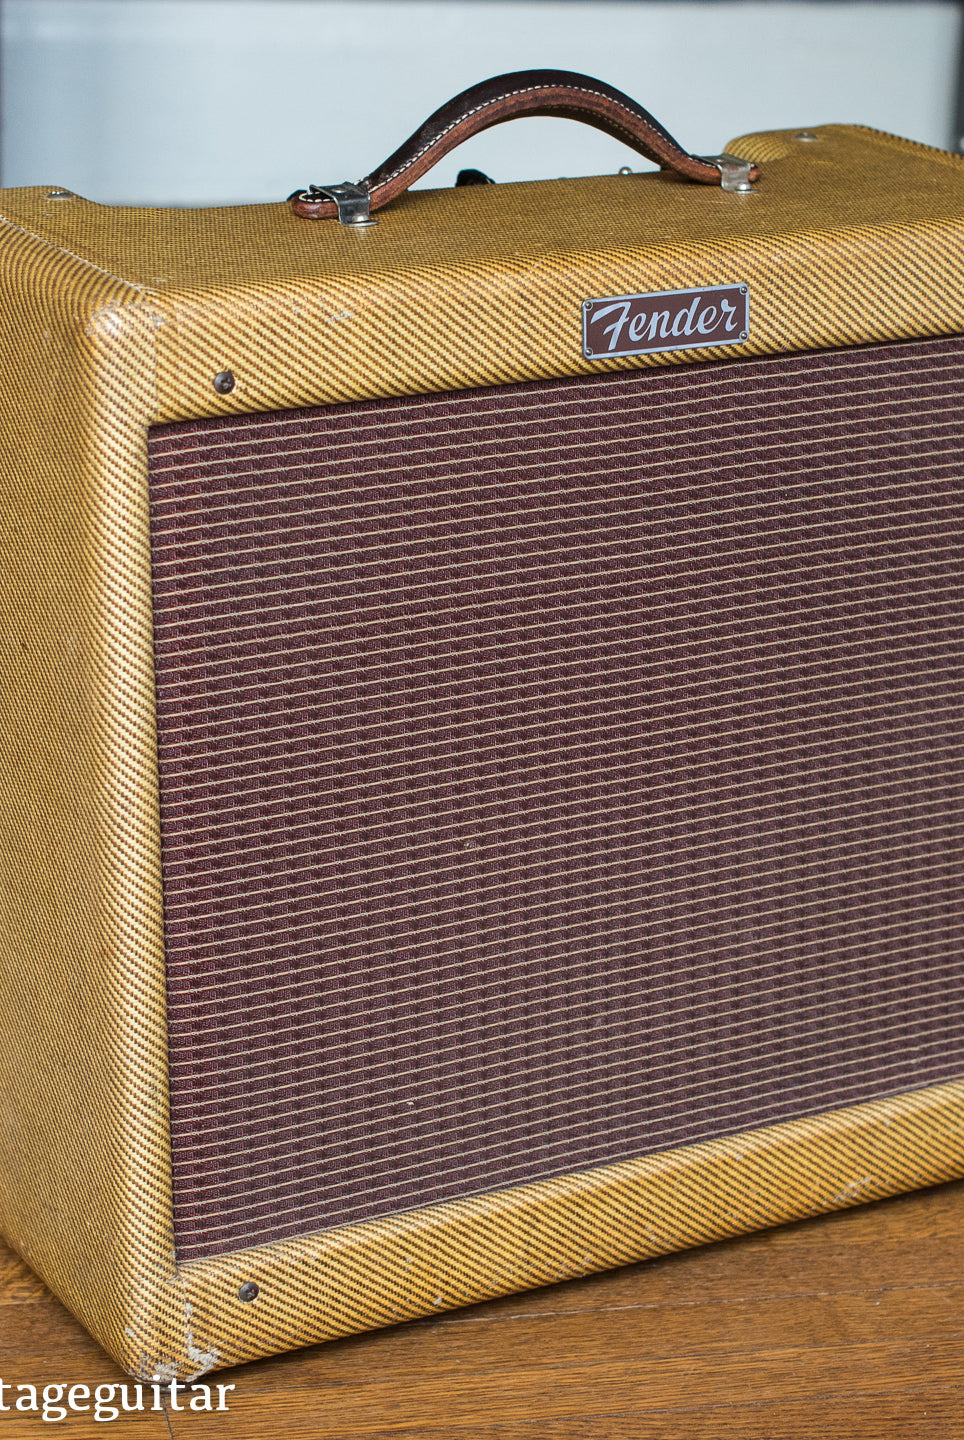 1955 Fender Deluxe guitar amp tweed